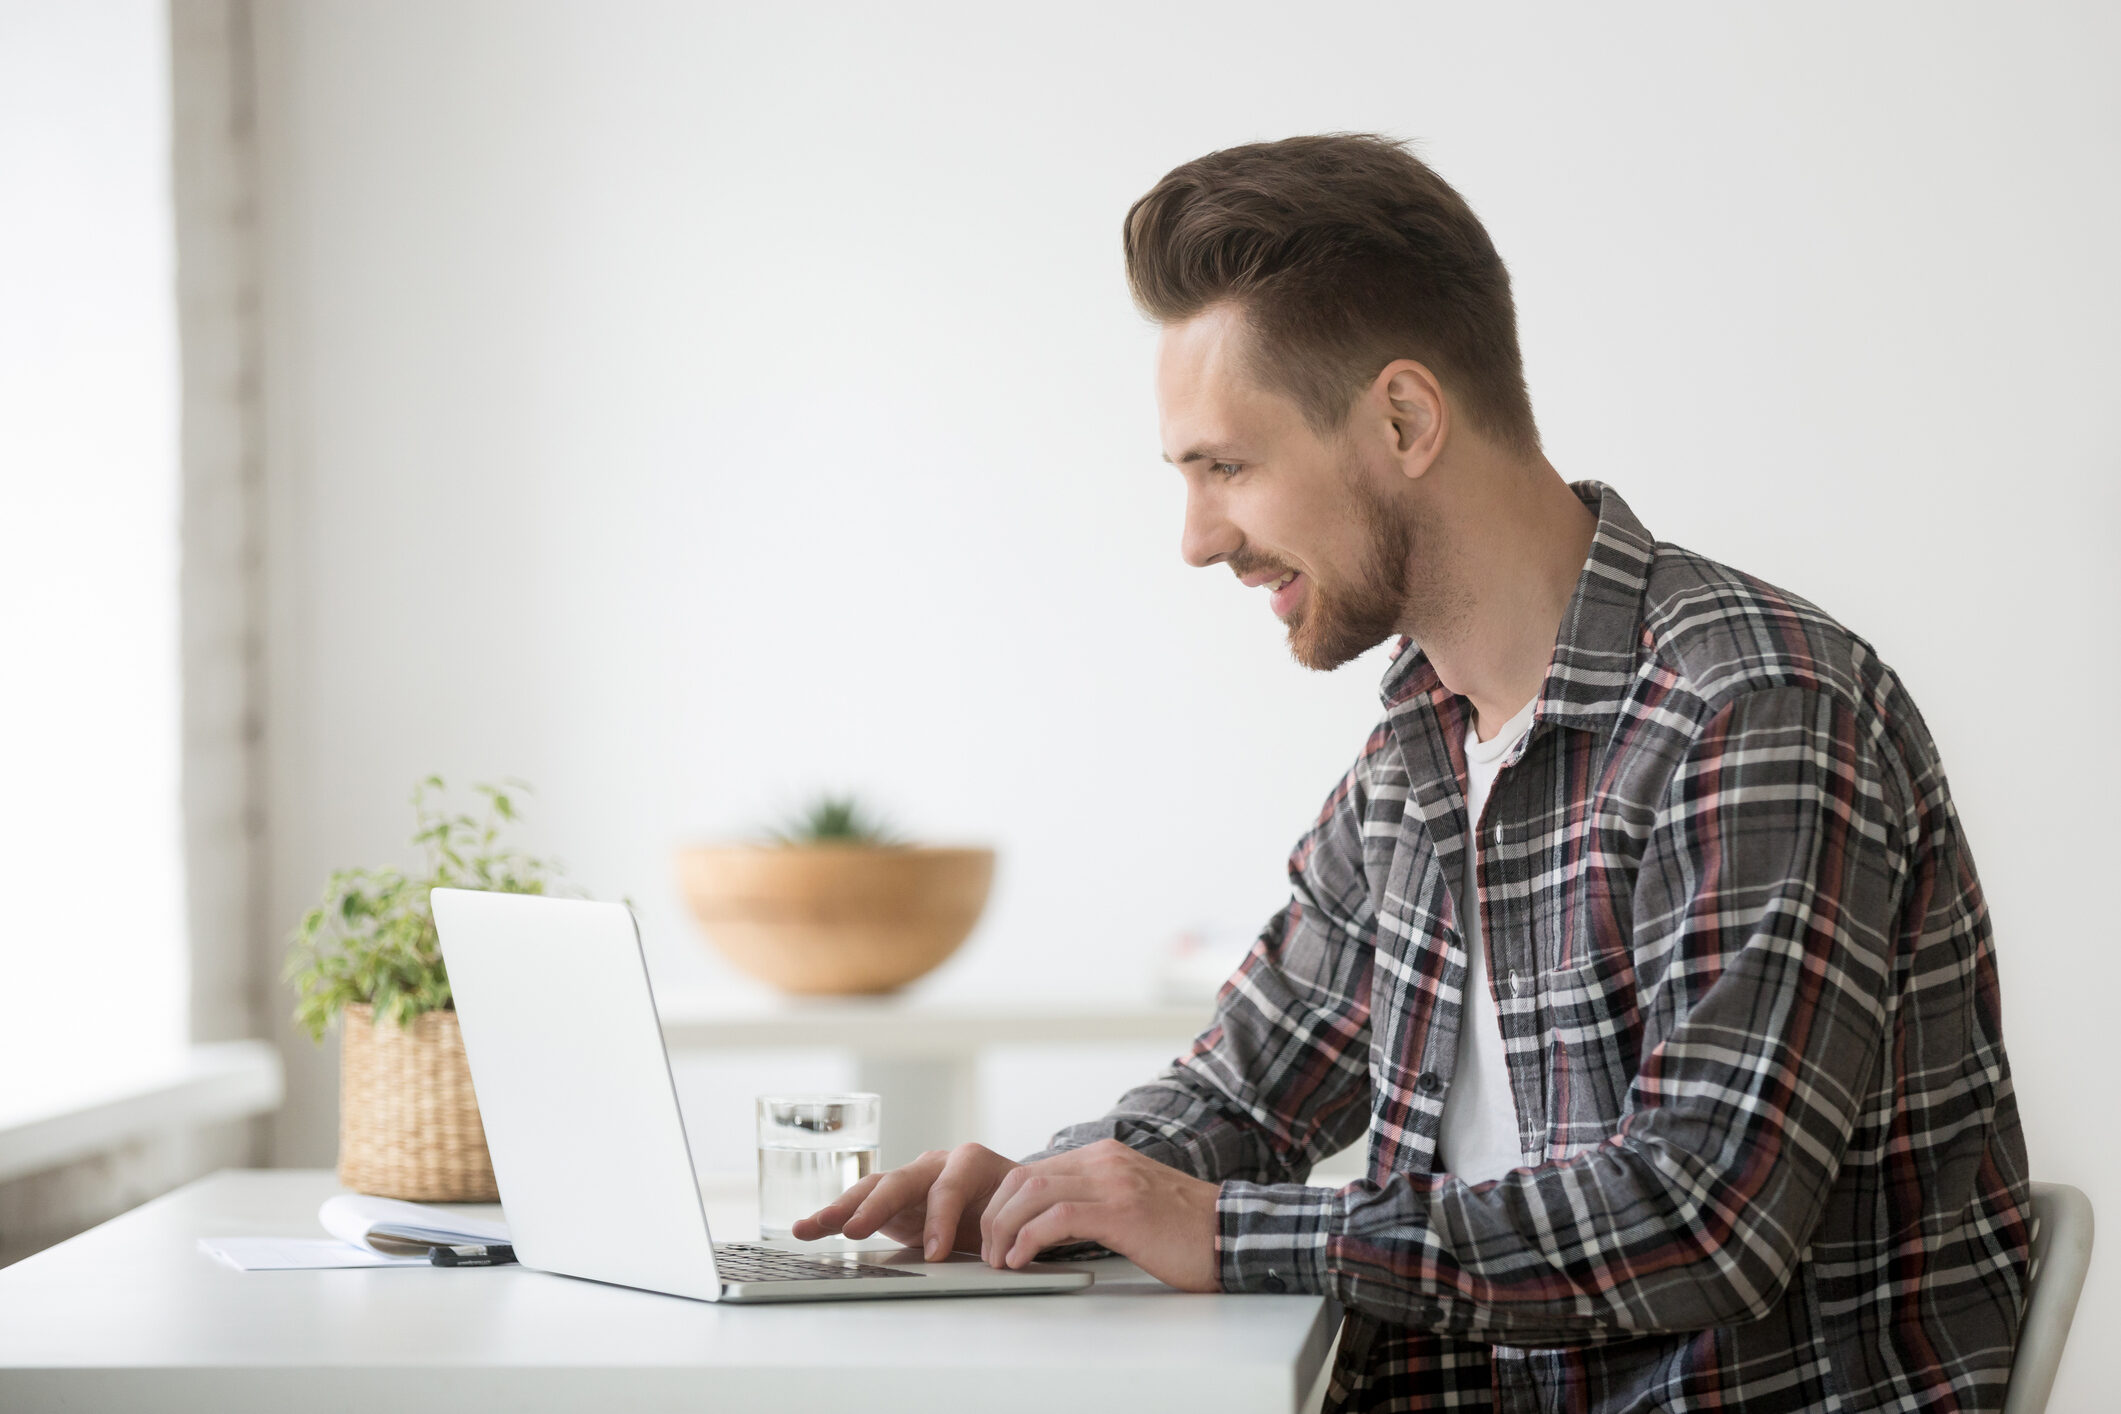 Smiling man freelancer working on laptop communicating online using software